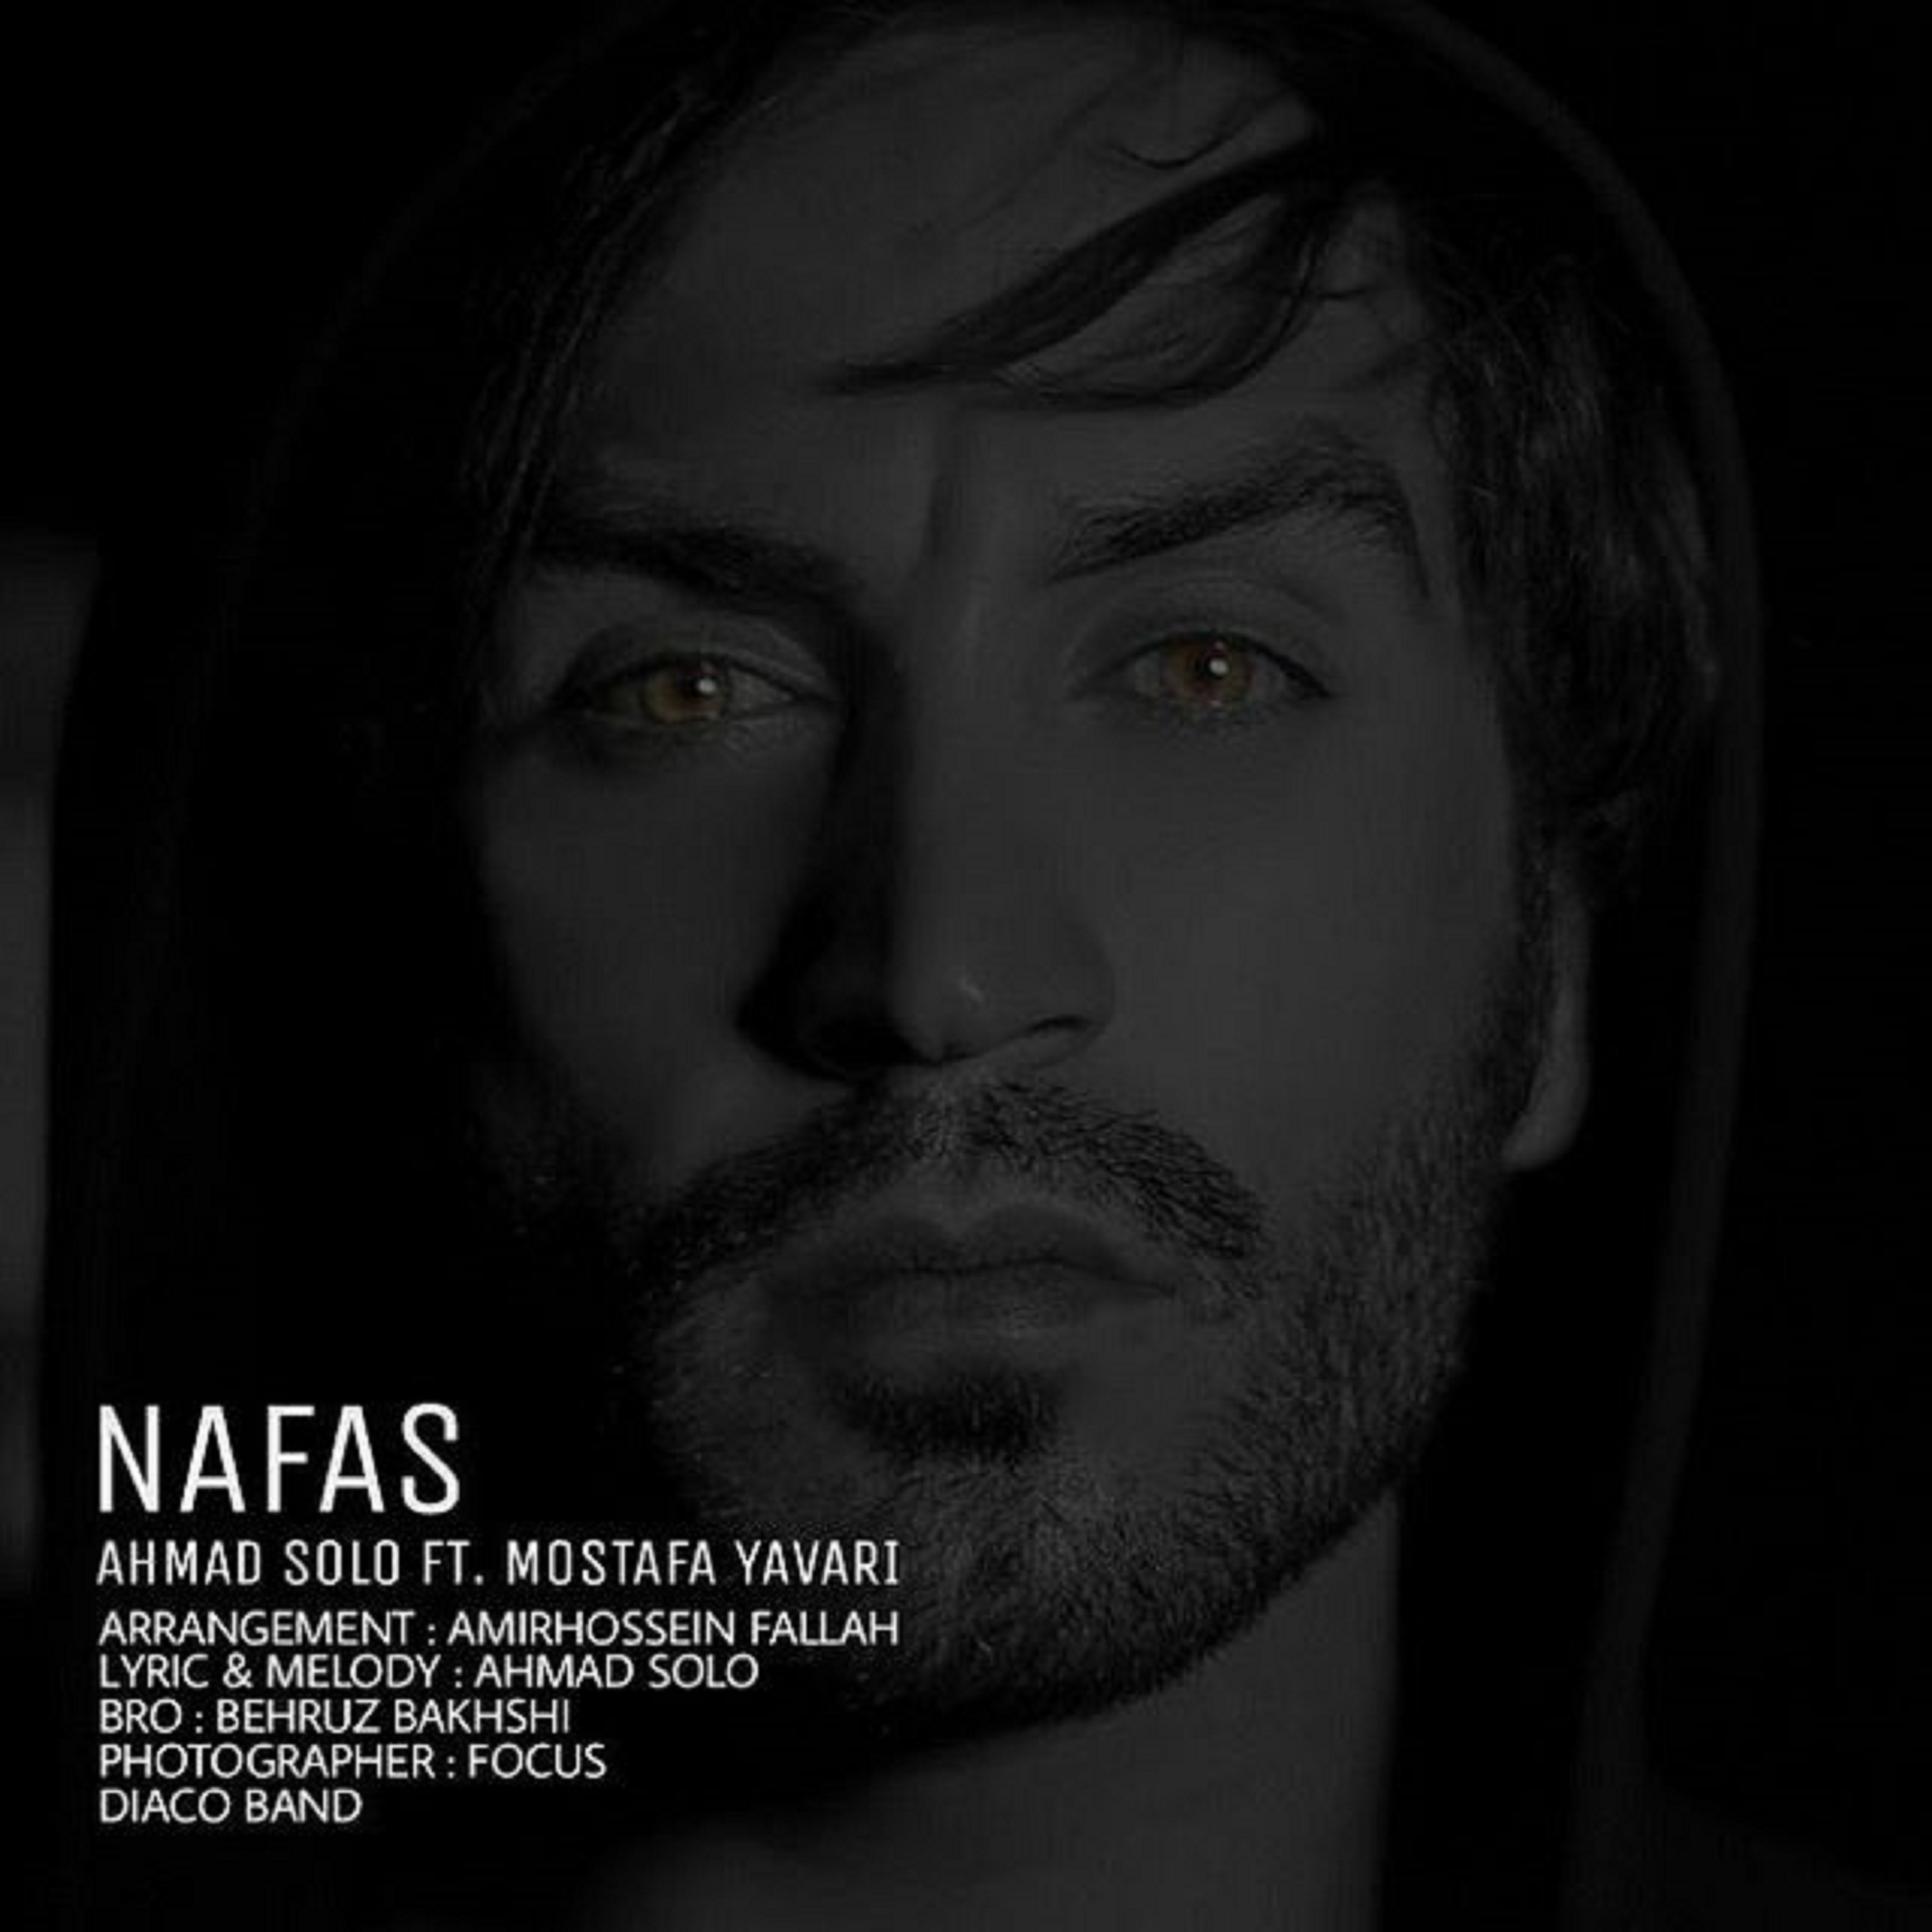  دانلود آهنگ جدید احمد سلو - نفس | Download New Music By Ahmad Solo - Nafas (feat. Mostafa Yavari)